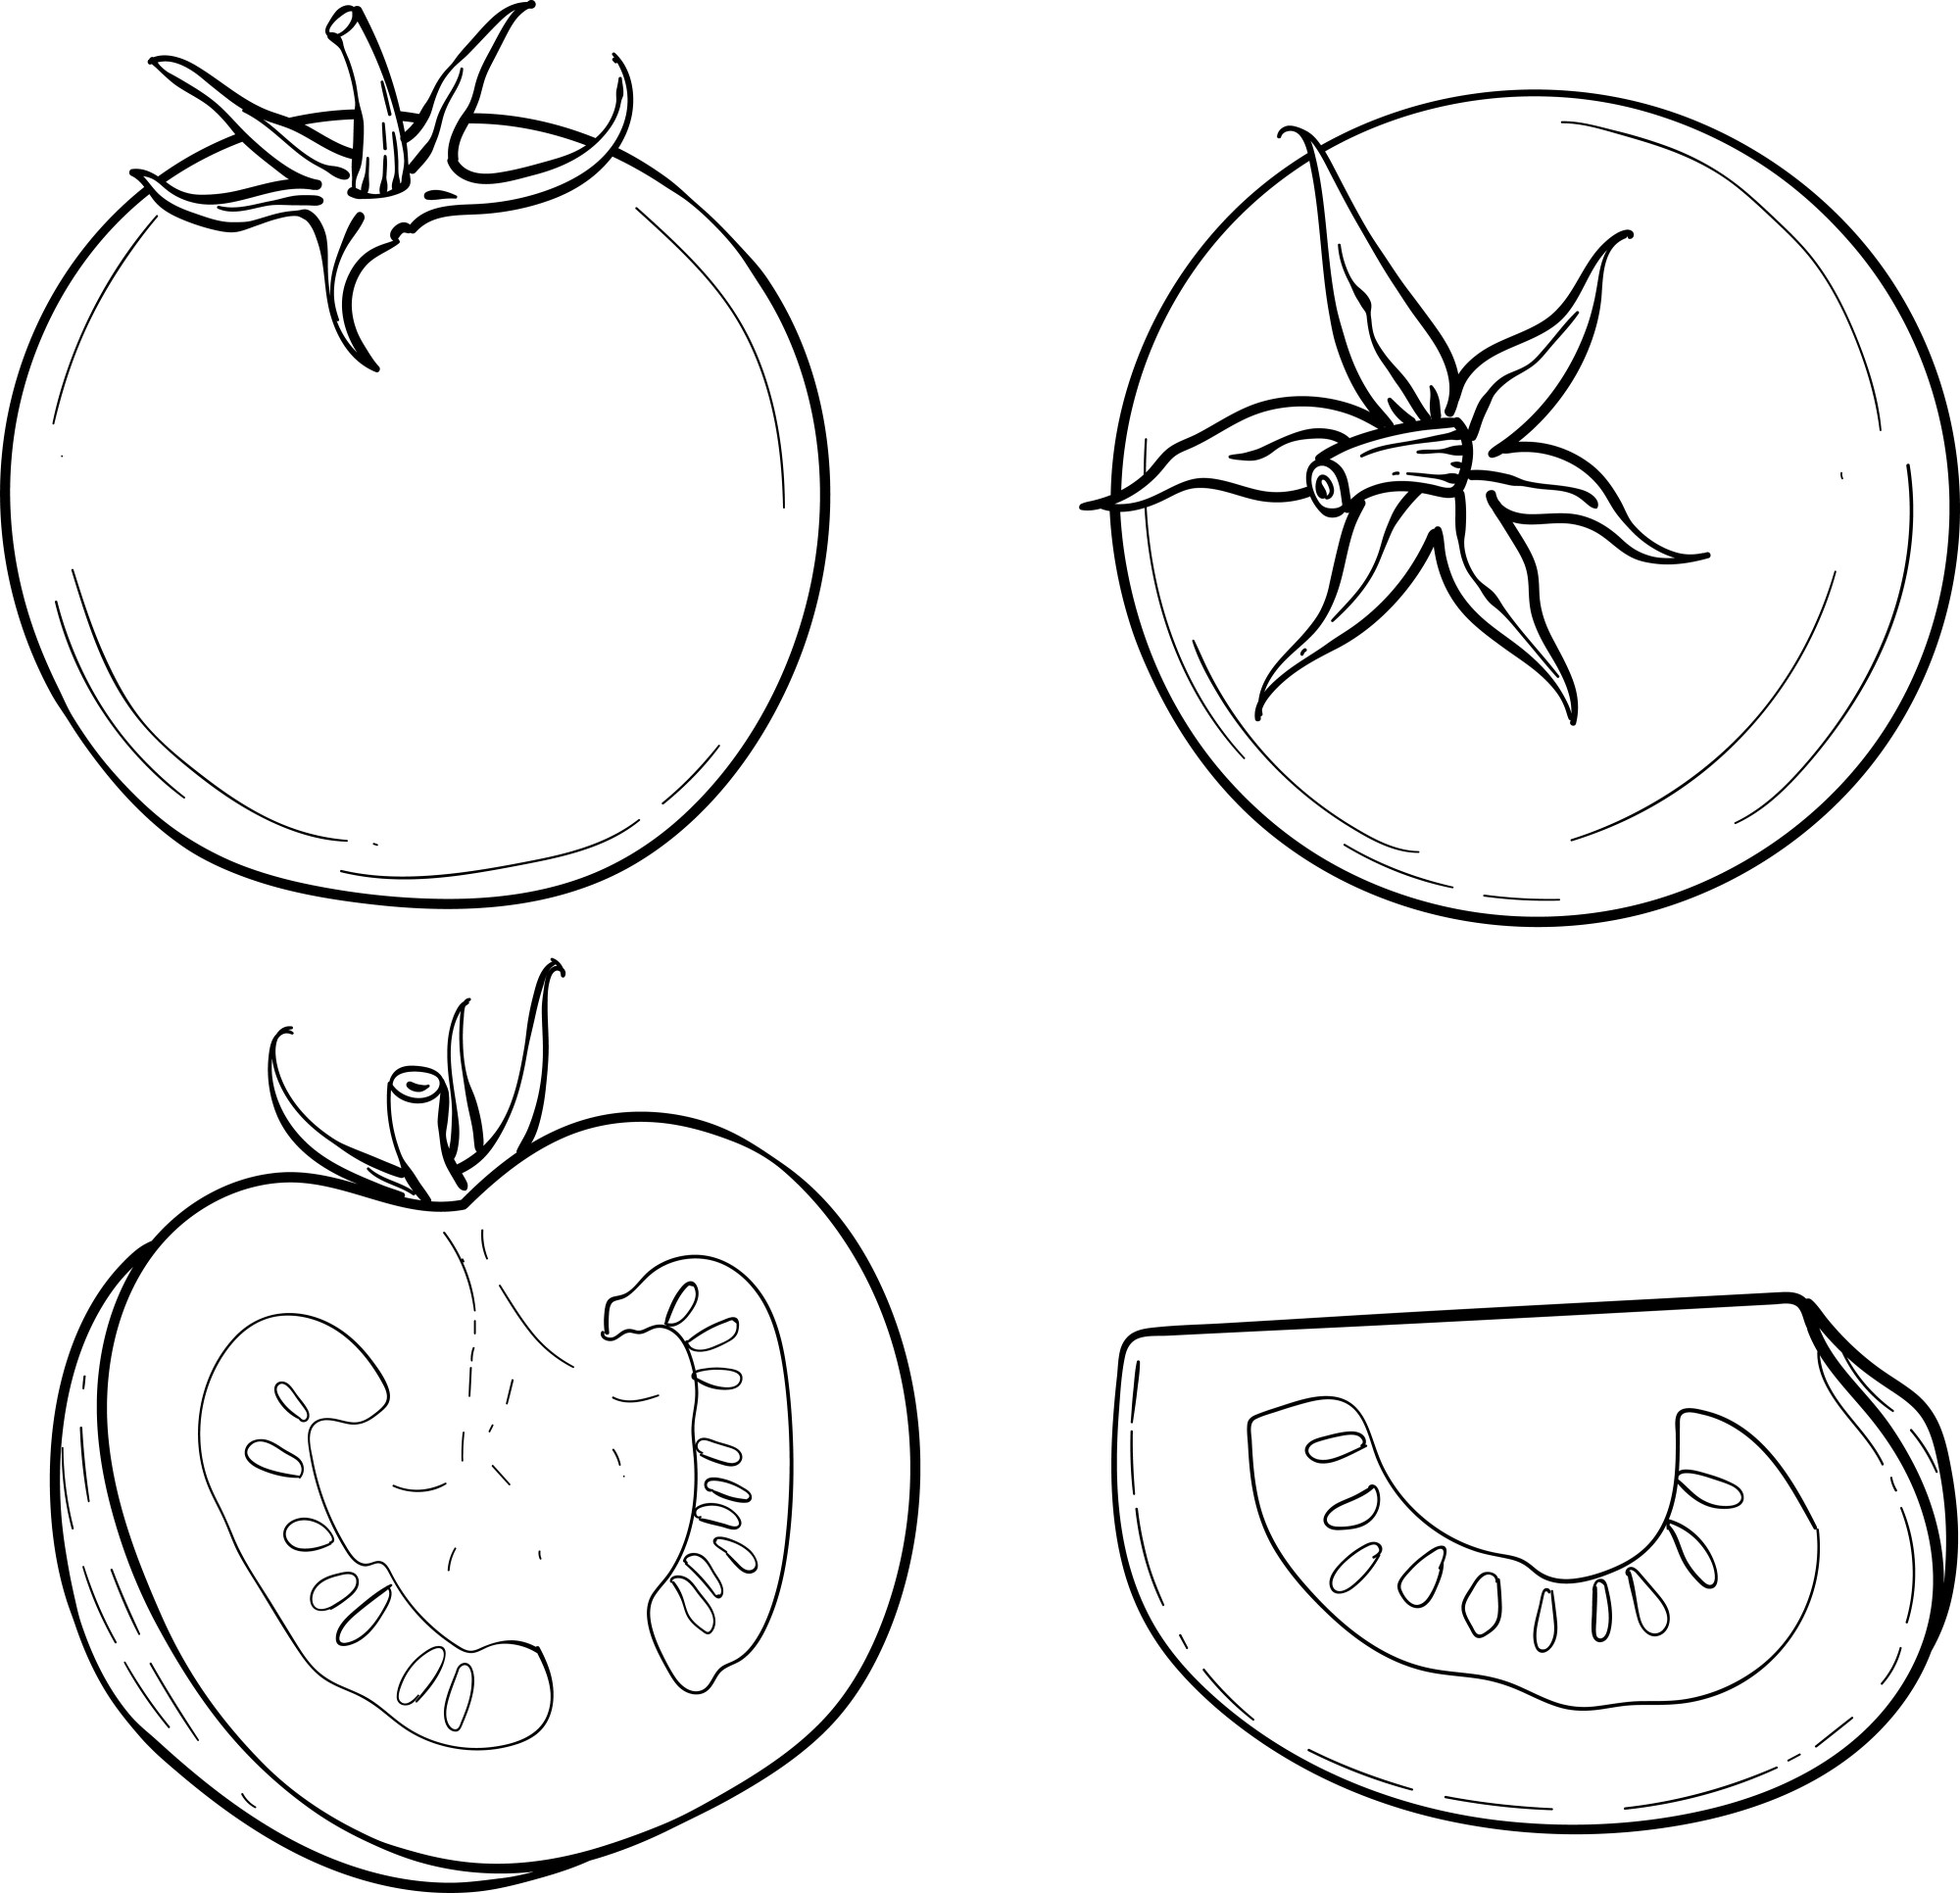 Раскраска для детей: целые помидоры и ломтики